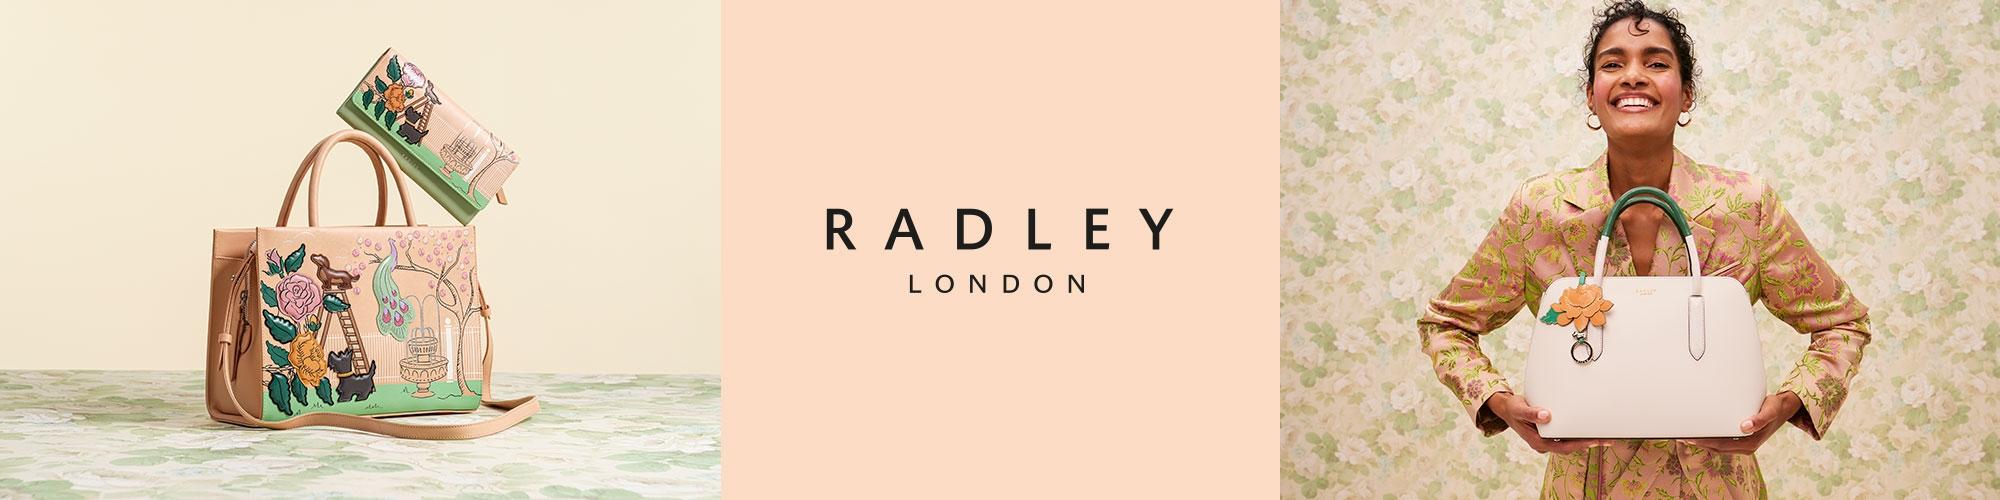 Radley London rygsække og punge